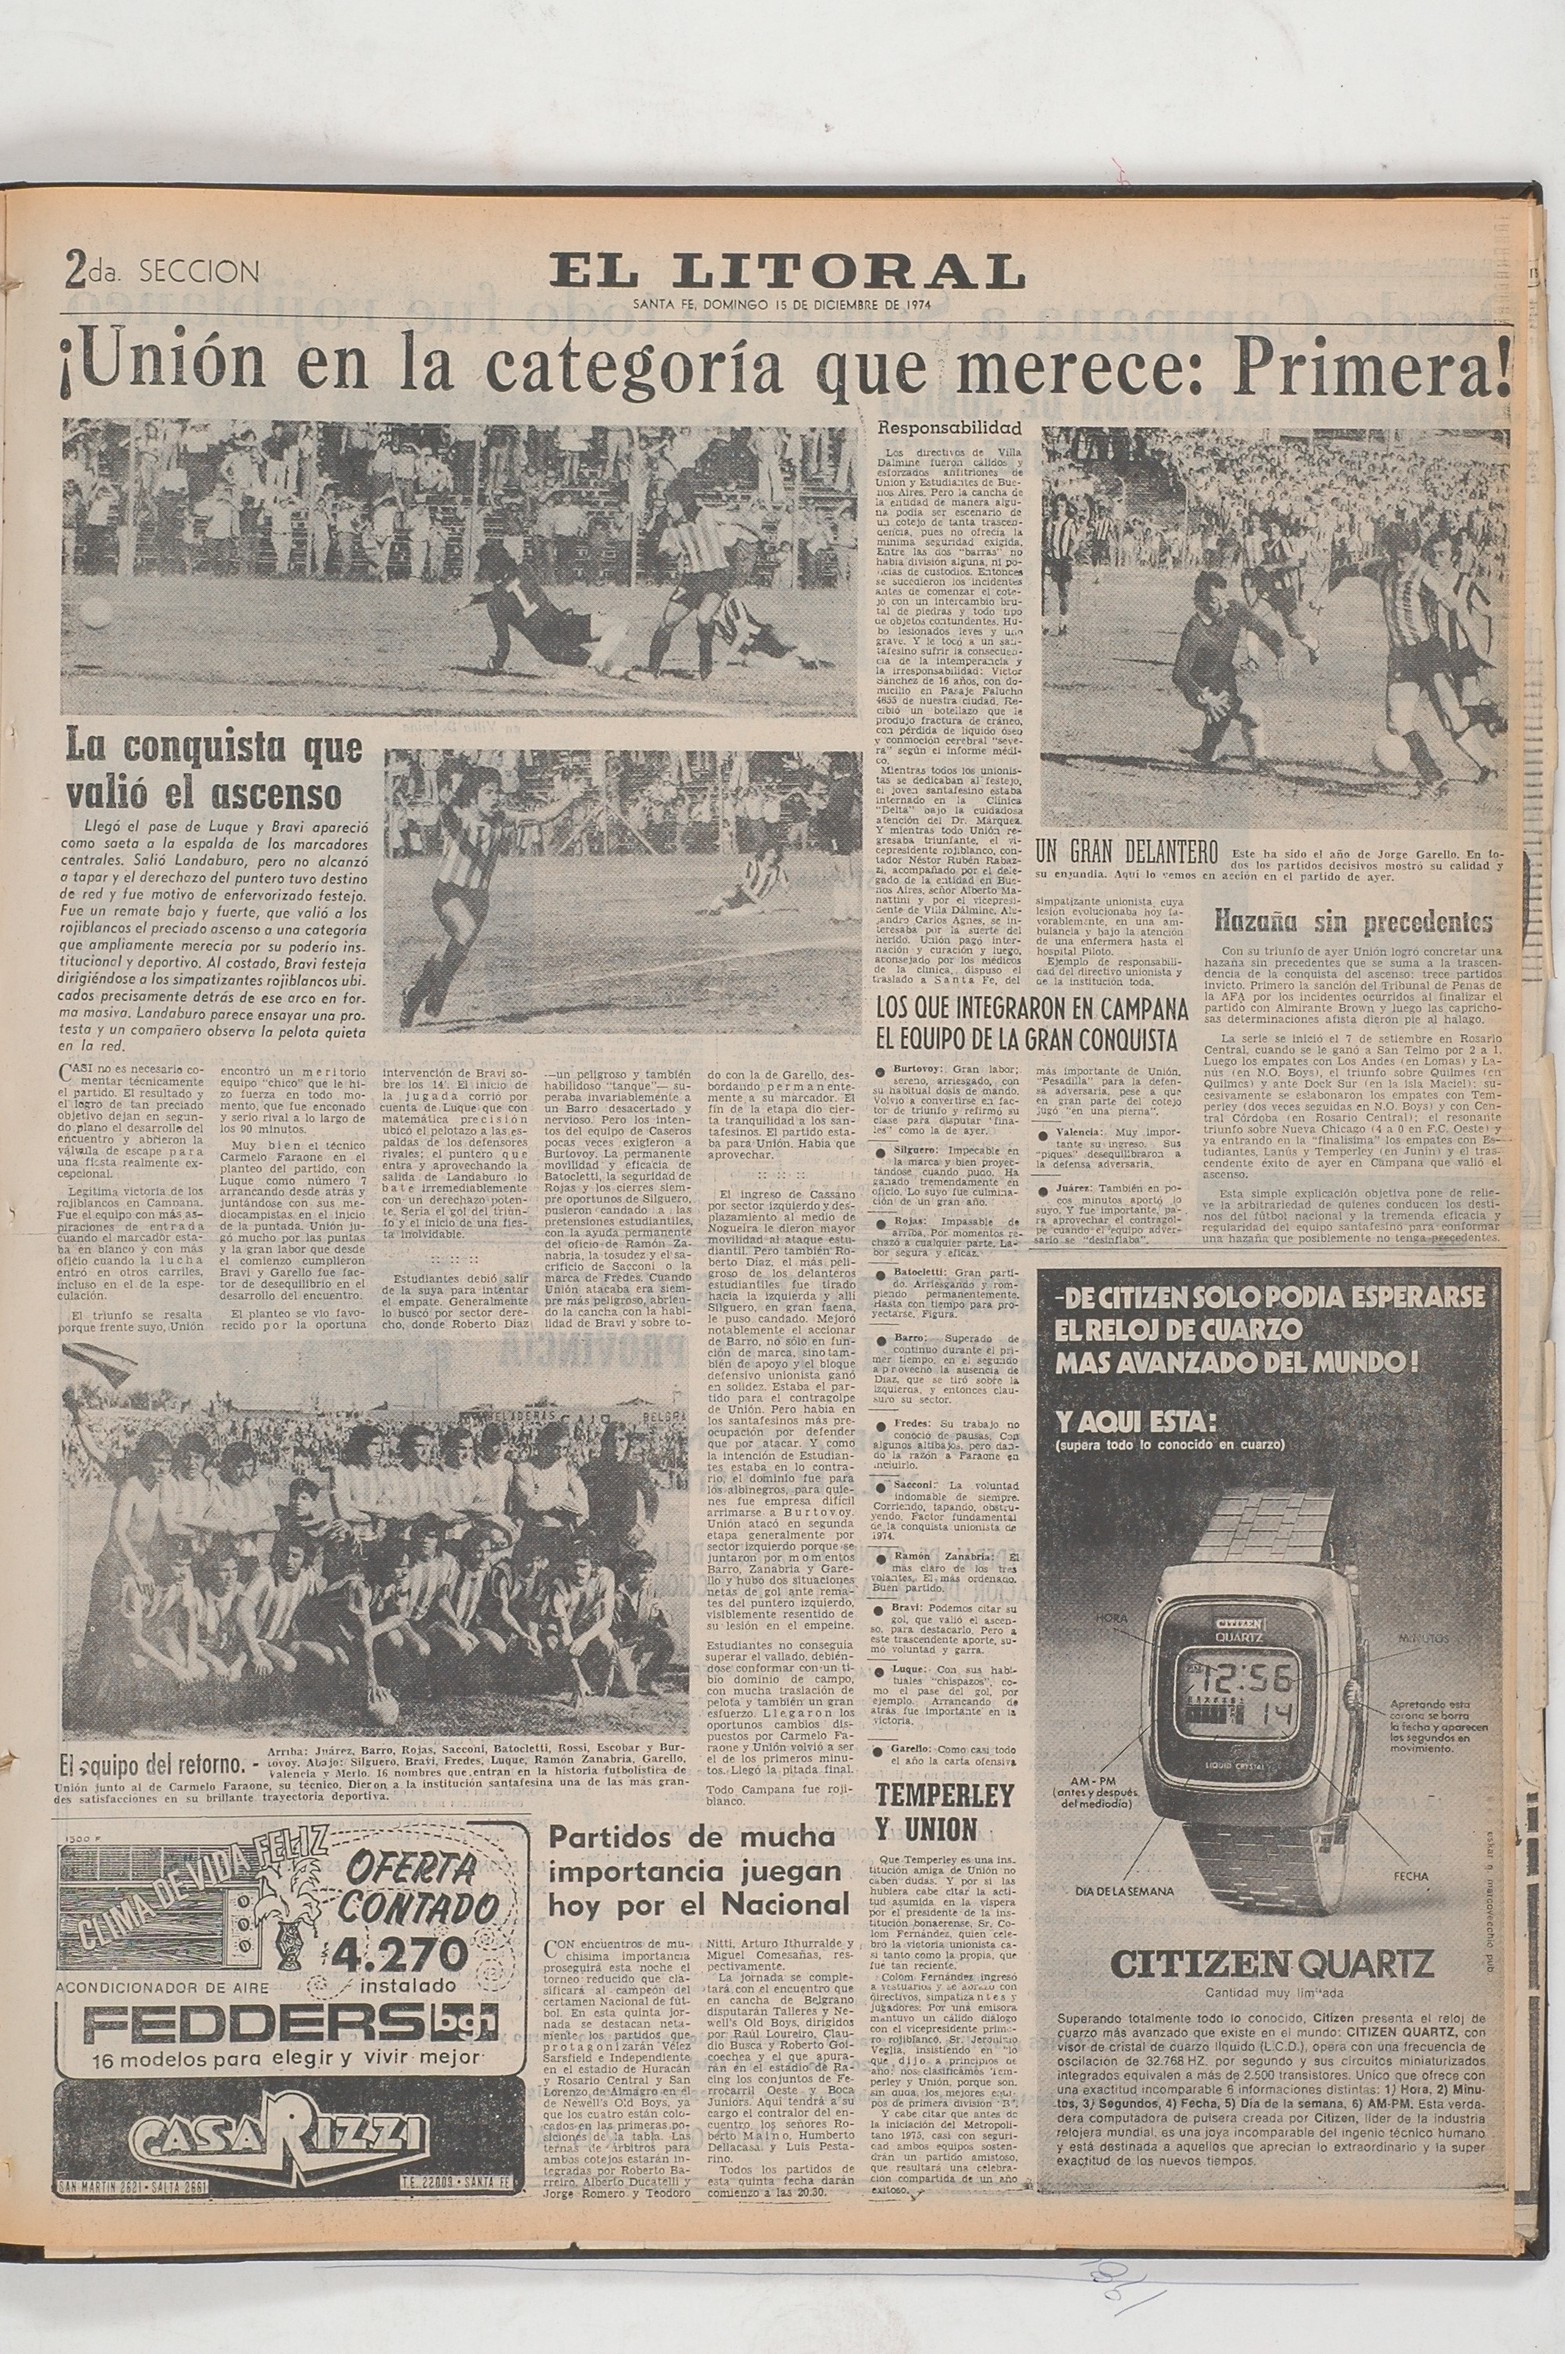 Cobertura de El Litoral del ascenso de 1974 en Campana, provincia de Buenos Aires. 